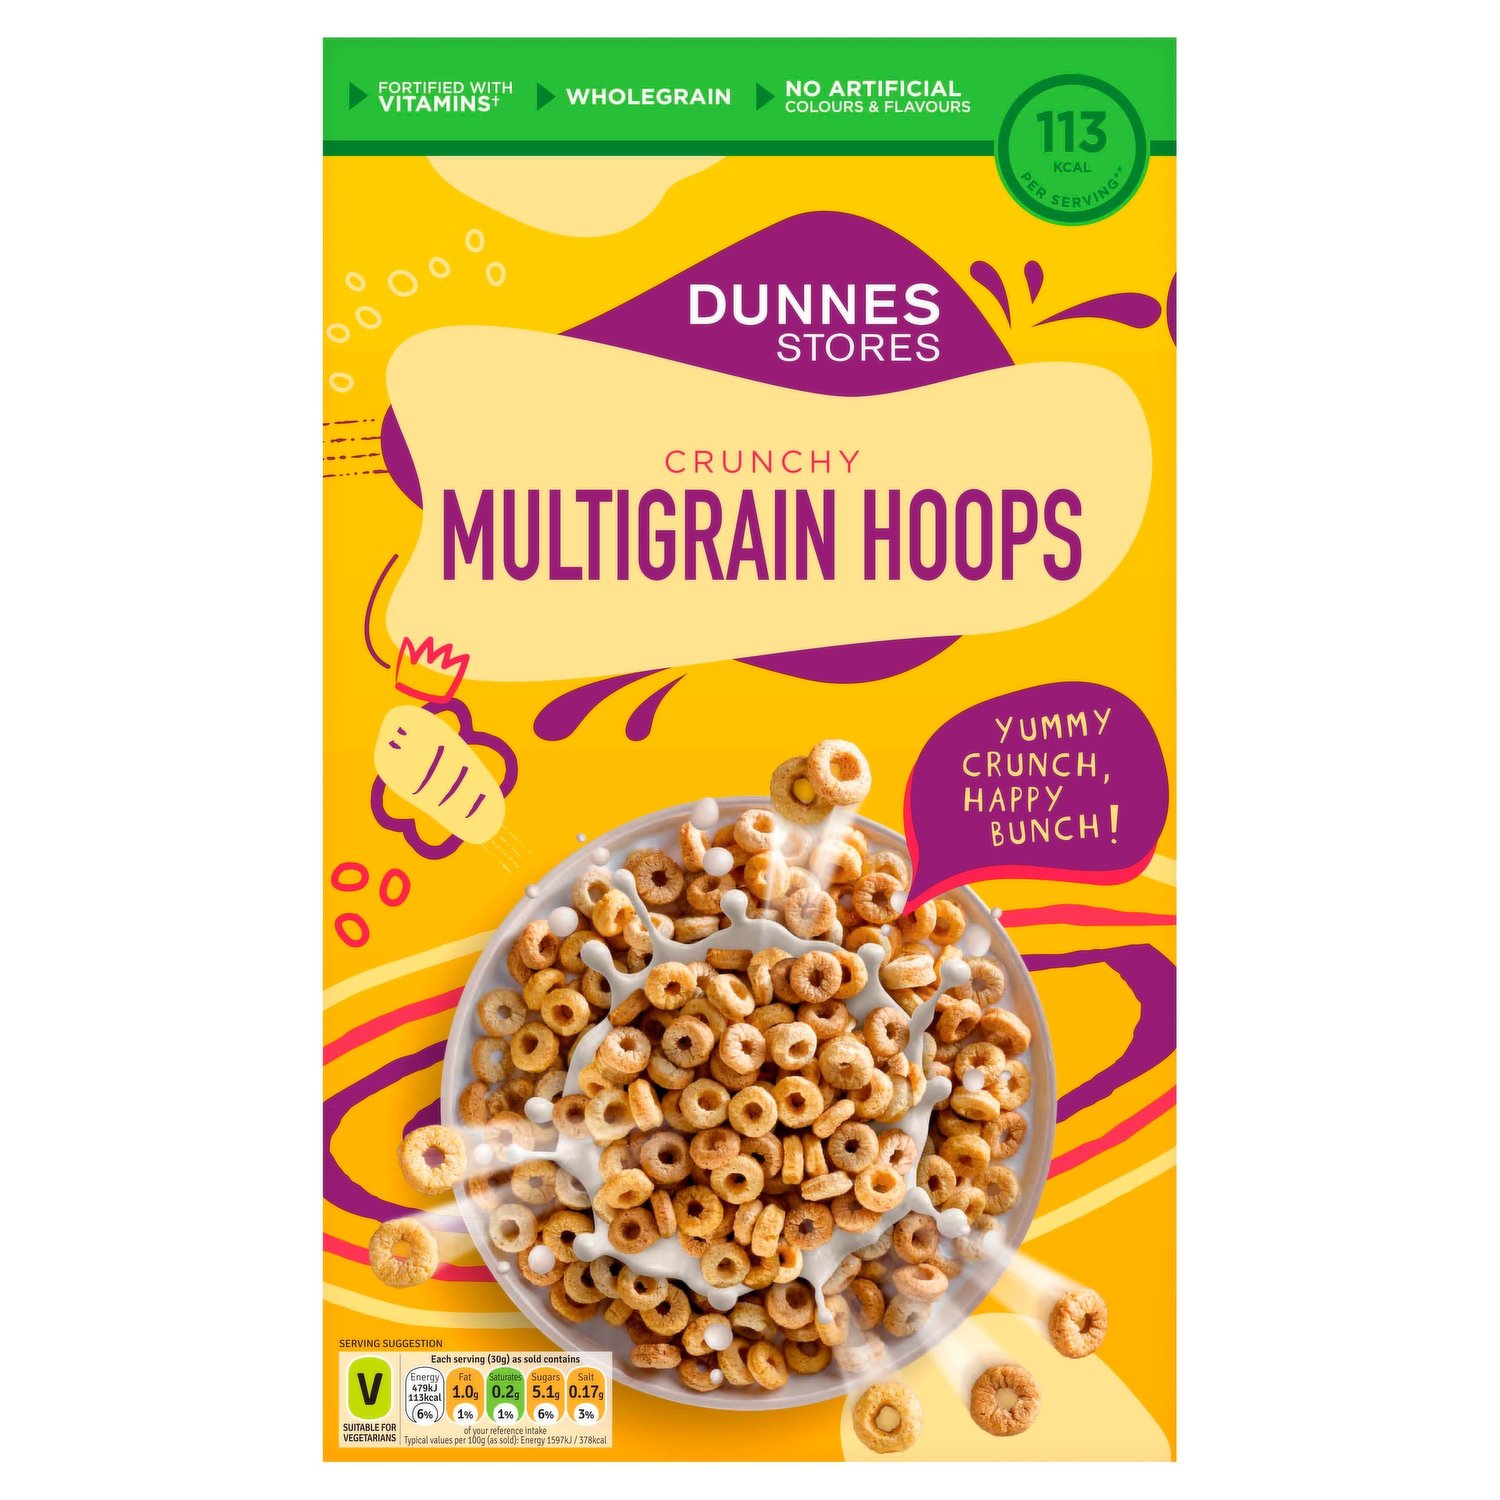 Delicious Coco Pops Golden Pops Multigrain Cereals